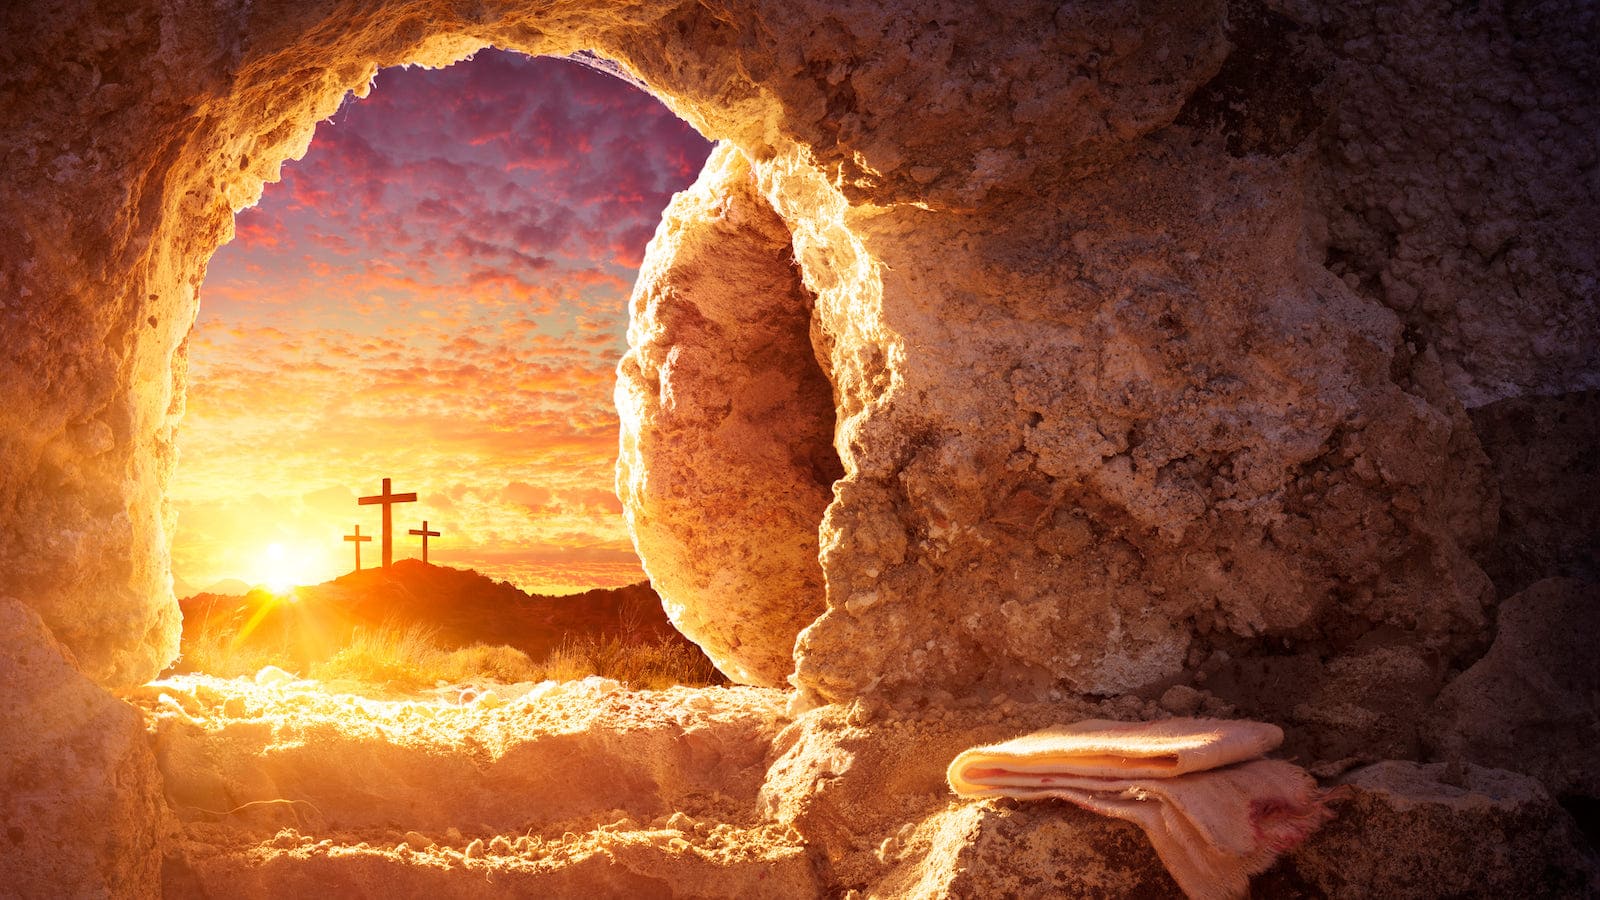 Easter Sunday Christians Celebrate the Risen Christ